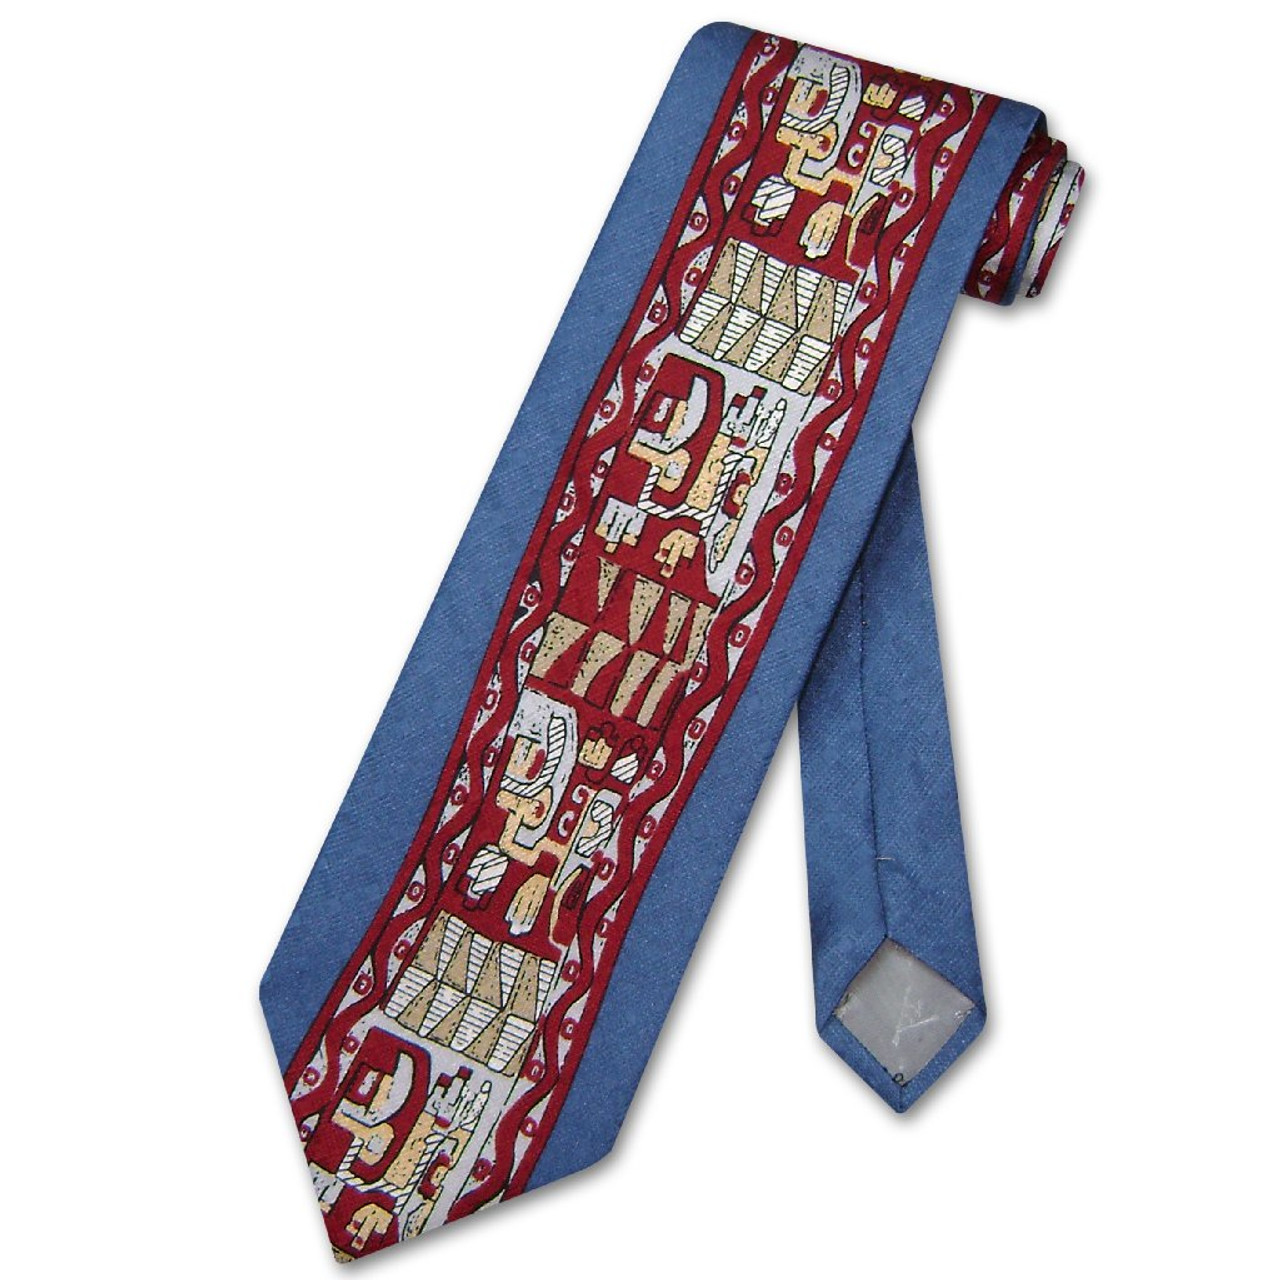 Antonio Ricci Silk NeckTie Made in Italy Design Mens Neck Tie #3102-3